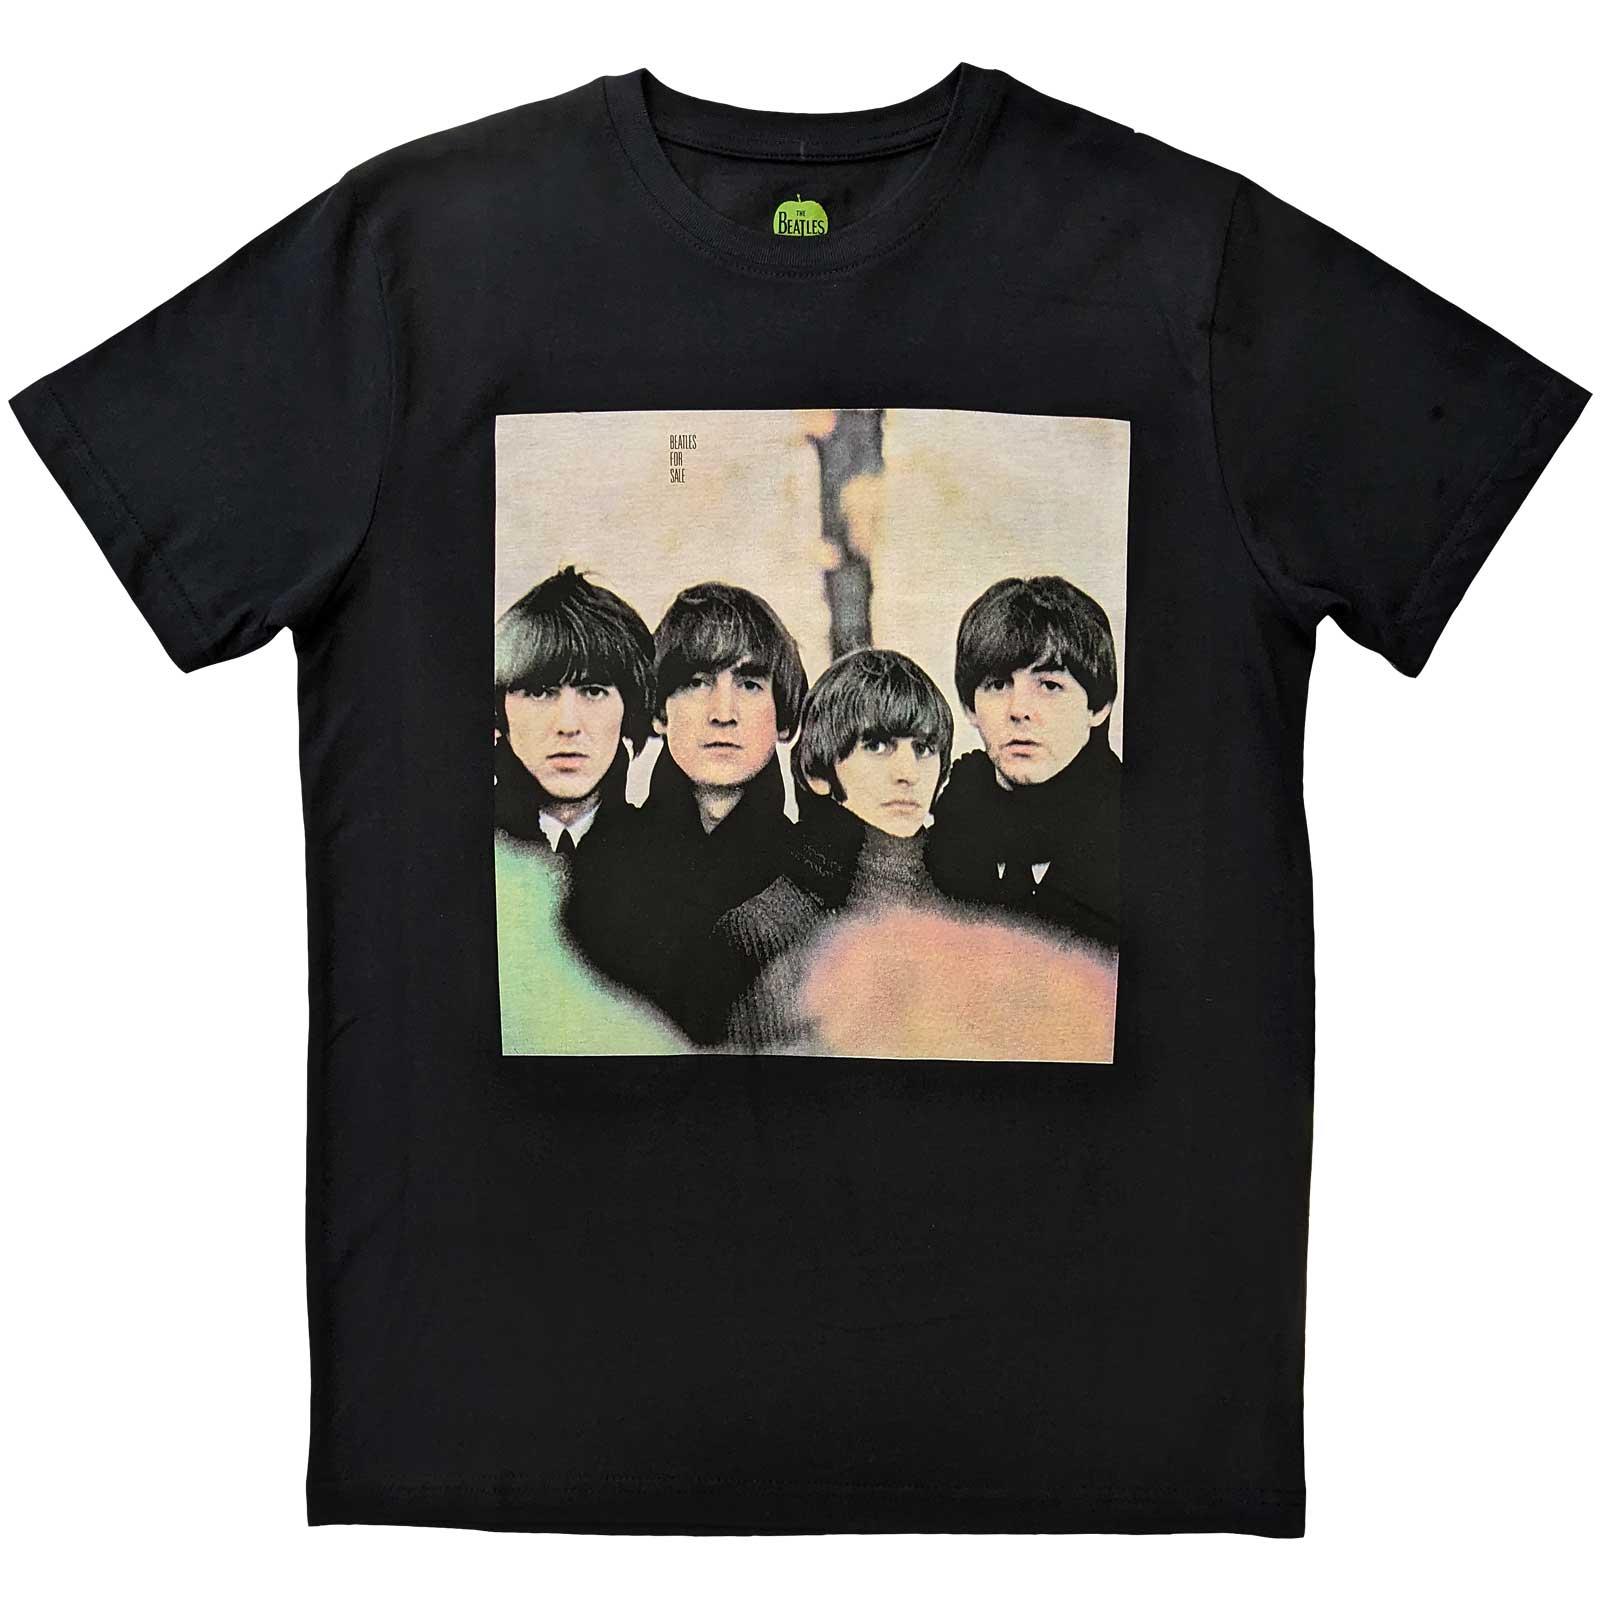 (ビートルズ) The Beatles オフィシャル商品 ユニセックス For Sale Album Tシャツ 半袖 トップス 【海外通販】